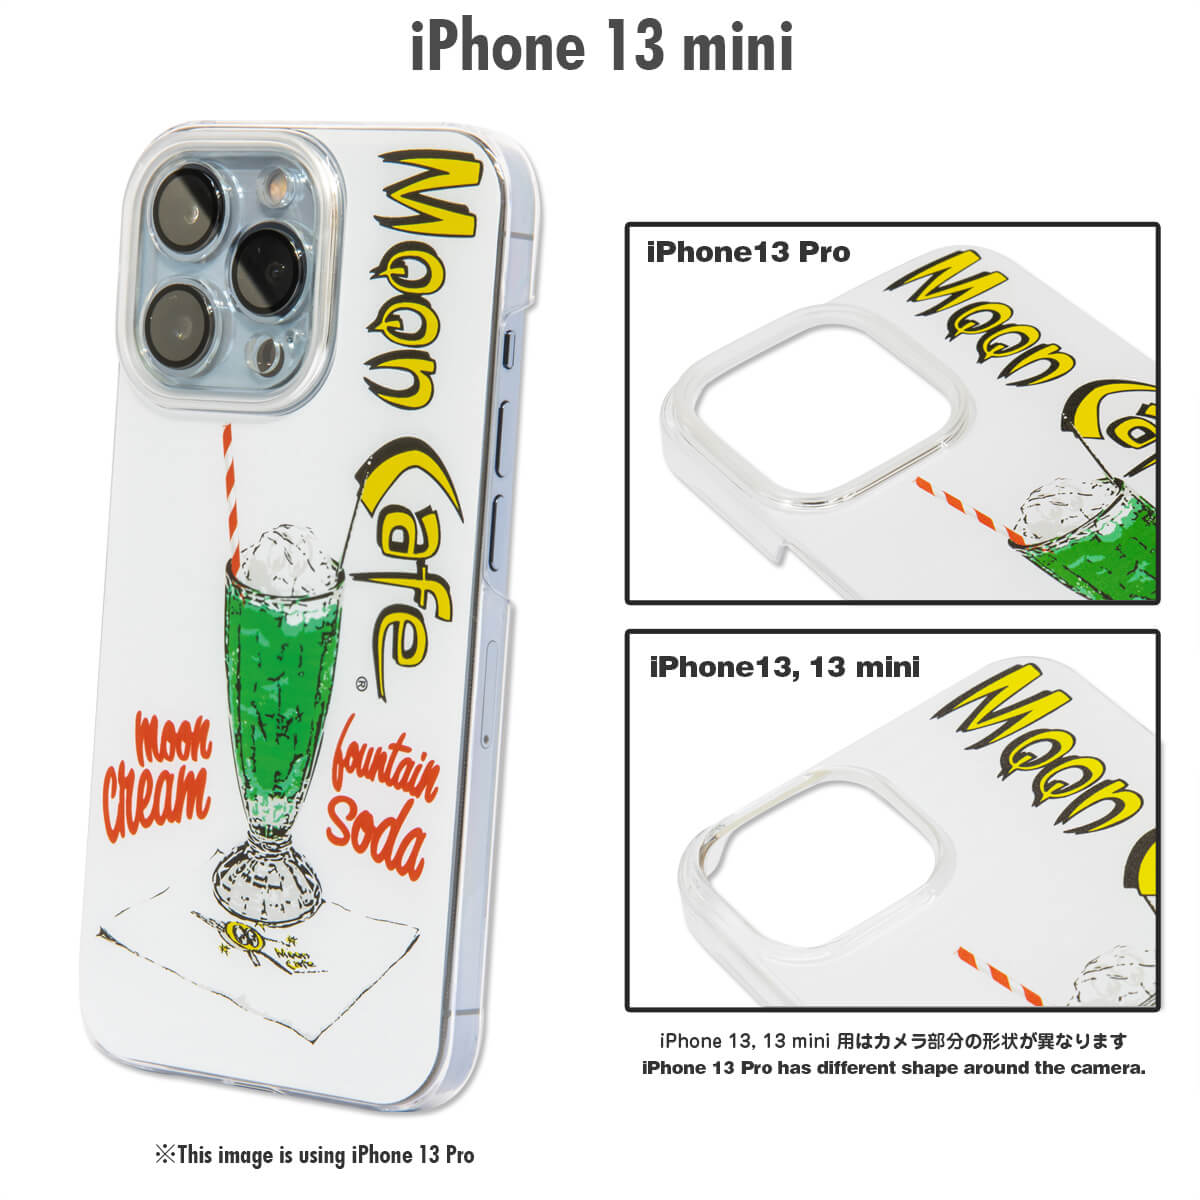 ムーンアイズ MOON Cafe クリームソーダ iPhone 13 mini ハードケース MOONEYES